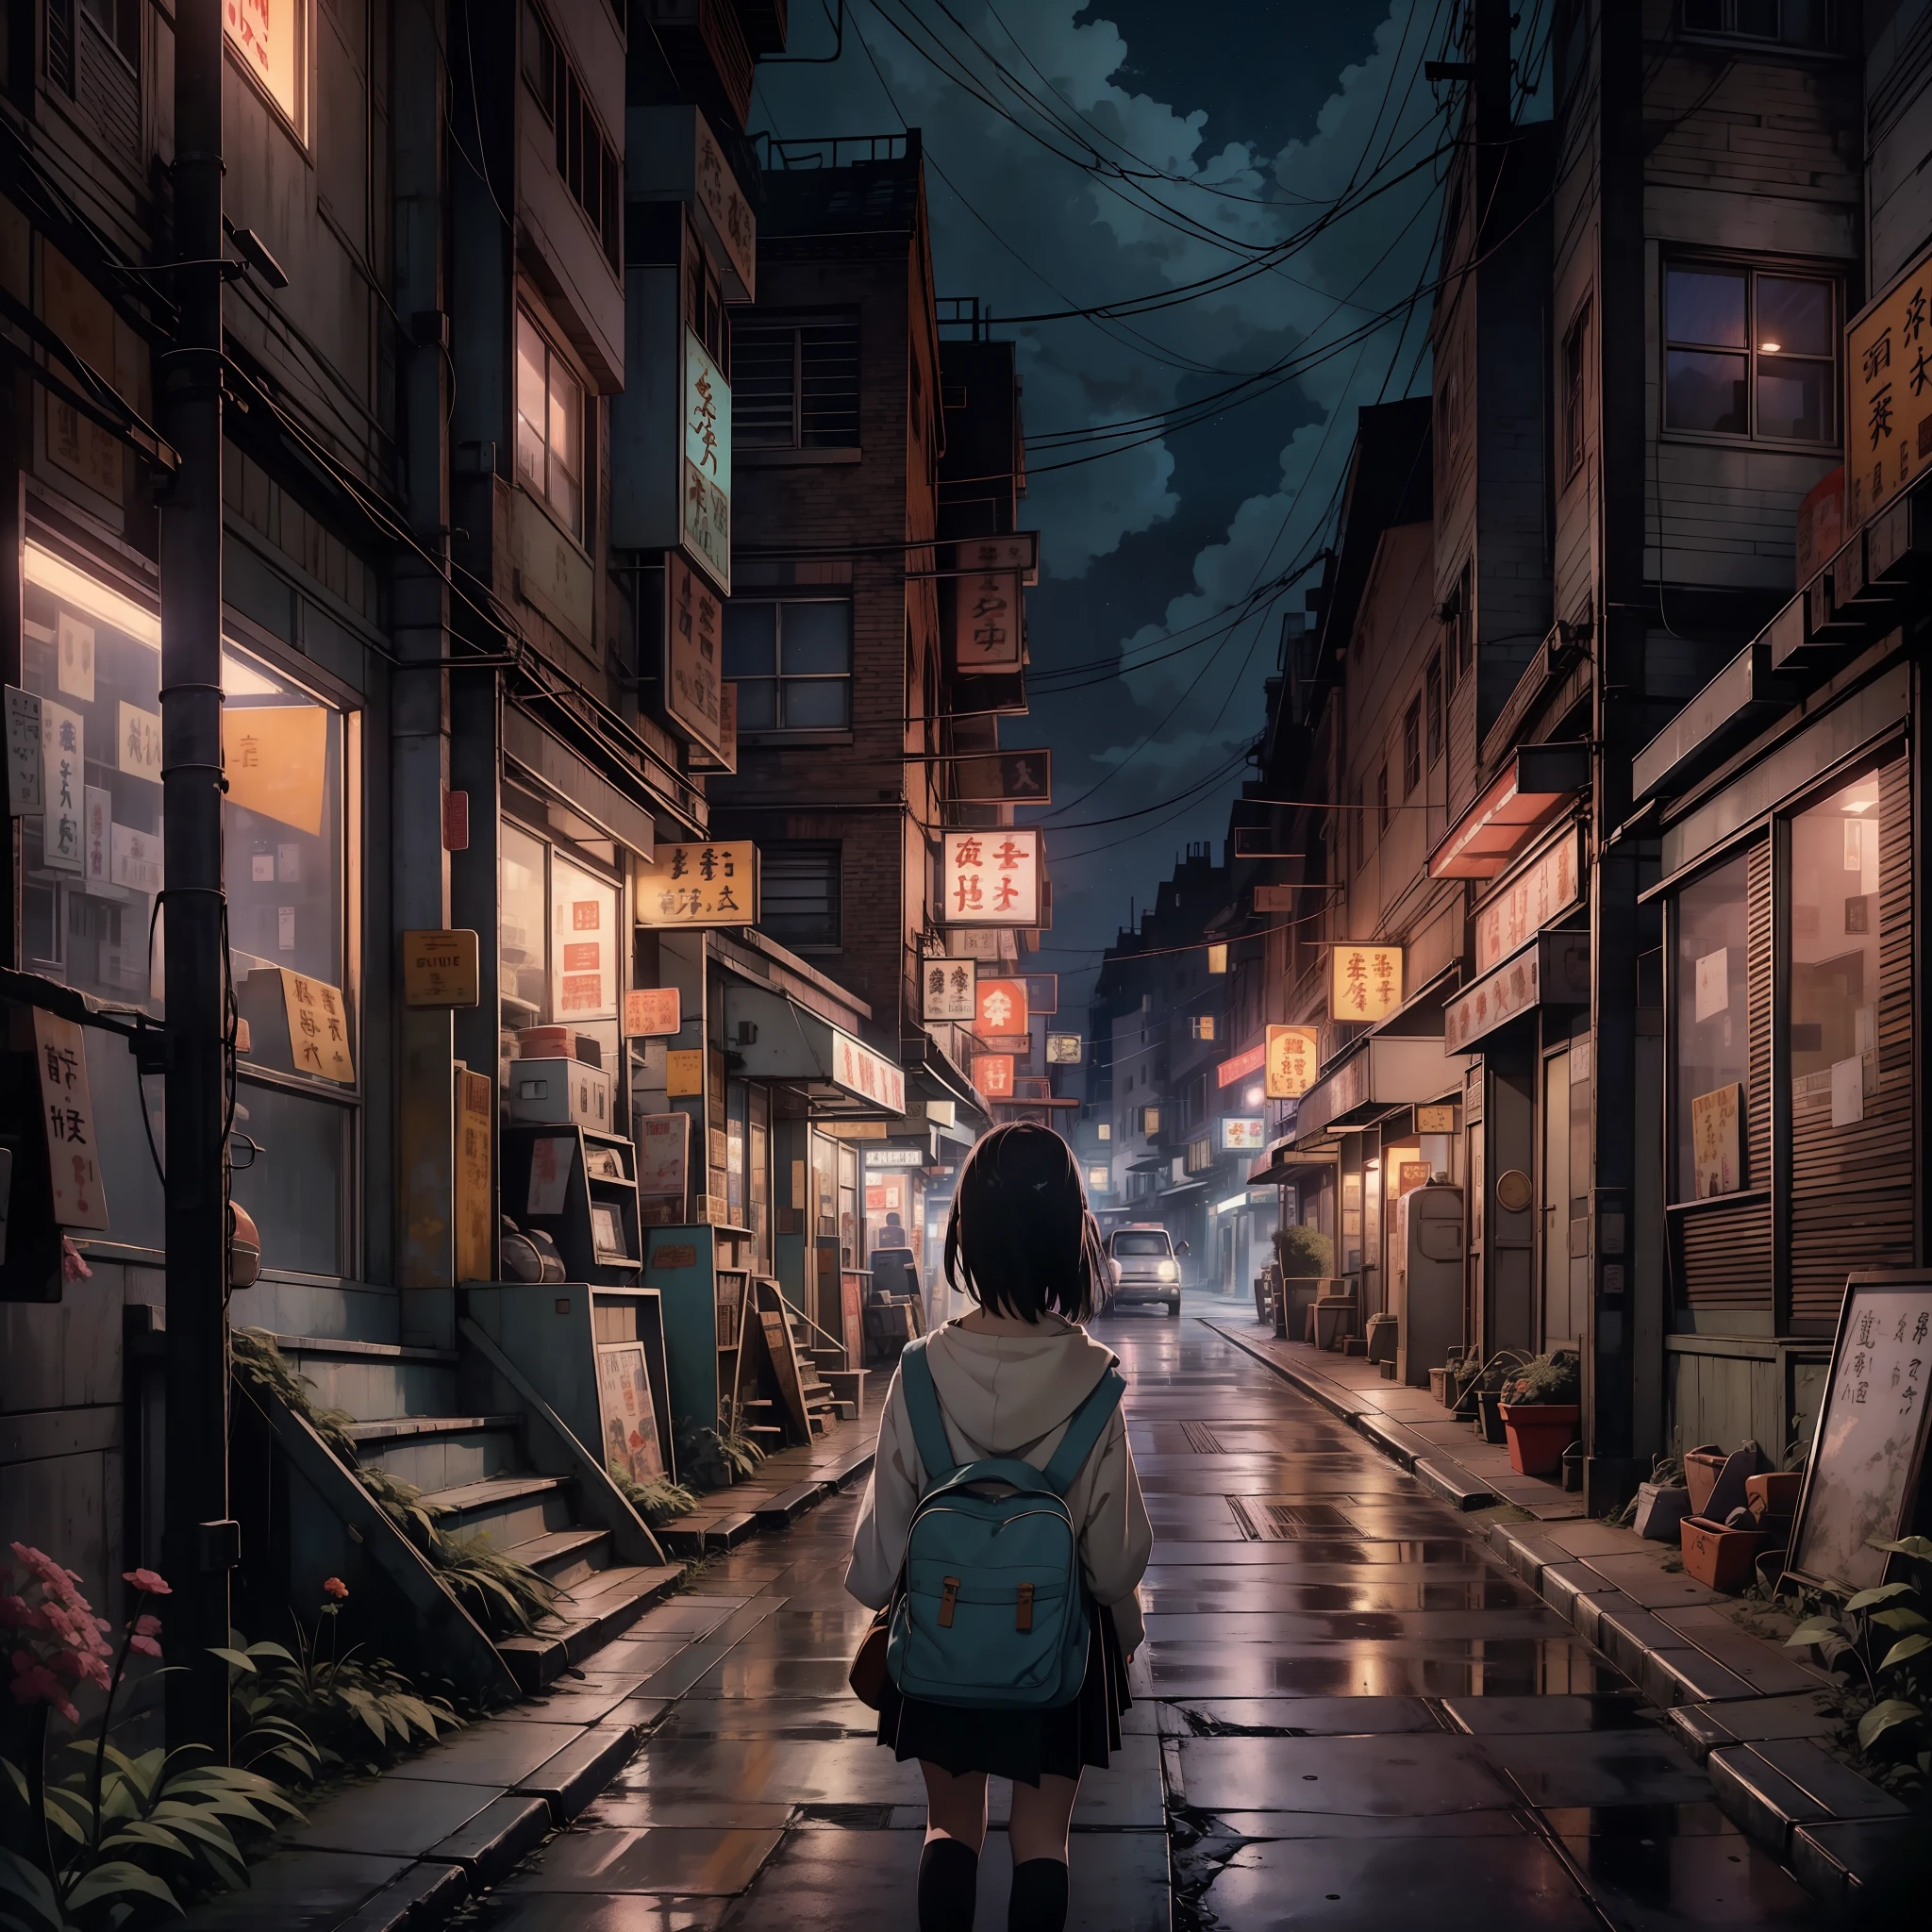 Ностальгическая цифровая картина, вдохновленная очаровательным миром Studio Ghibli.. На картине изображена очаровательная, улица маленького городка ночью, источая чувство спокойствия и удивления. Сцена подготовлена к кинематографическому моменту., напоминает сцену из фильма Гибли. В составе, одинокая школьница стоит в раздумье, она повернулась спиной к зрителю, излучающий нотку меланхолии. Мир вокруг нее прекрасно детализирован, передать суть ностальгической атмосферы. Небо над головой украшено захватывающим зрелищем звезд., вызывая чувство задумчивых воспоминаний, которое находит отклик у зрителей всех возрастов.